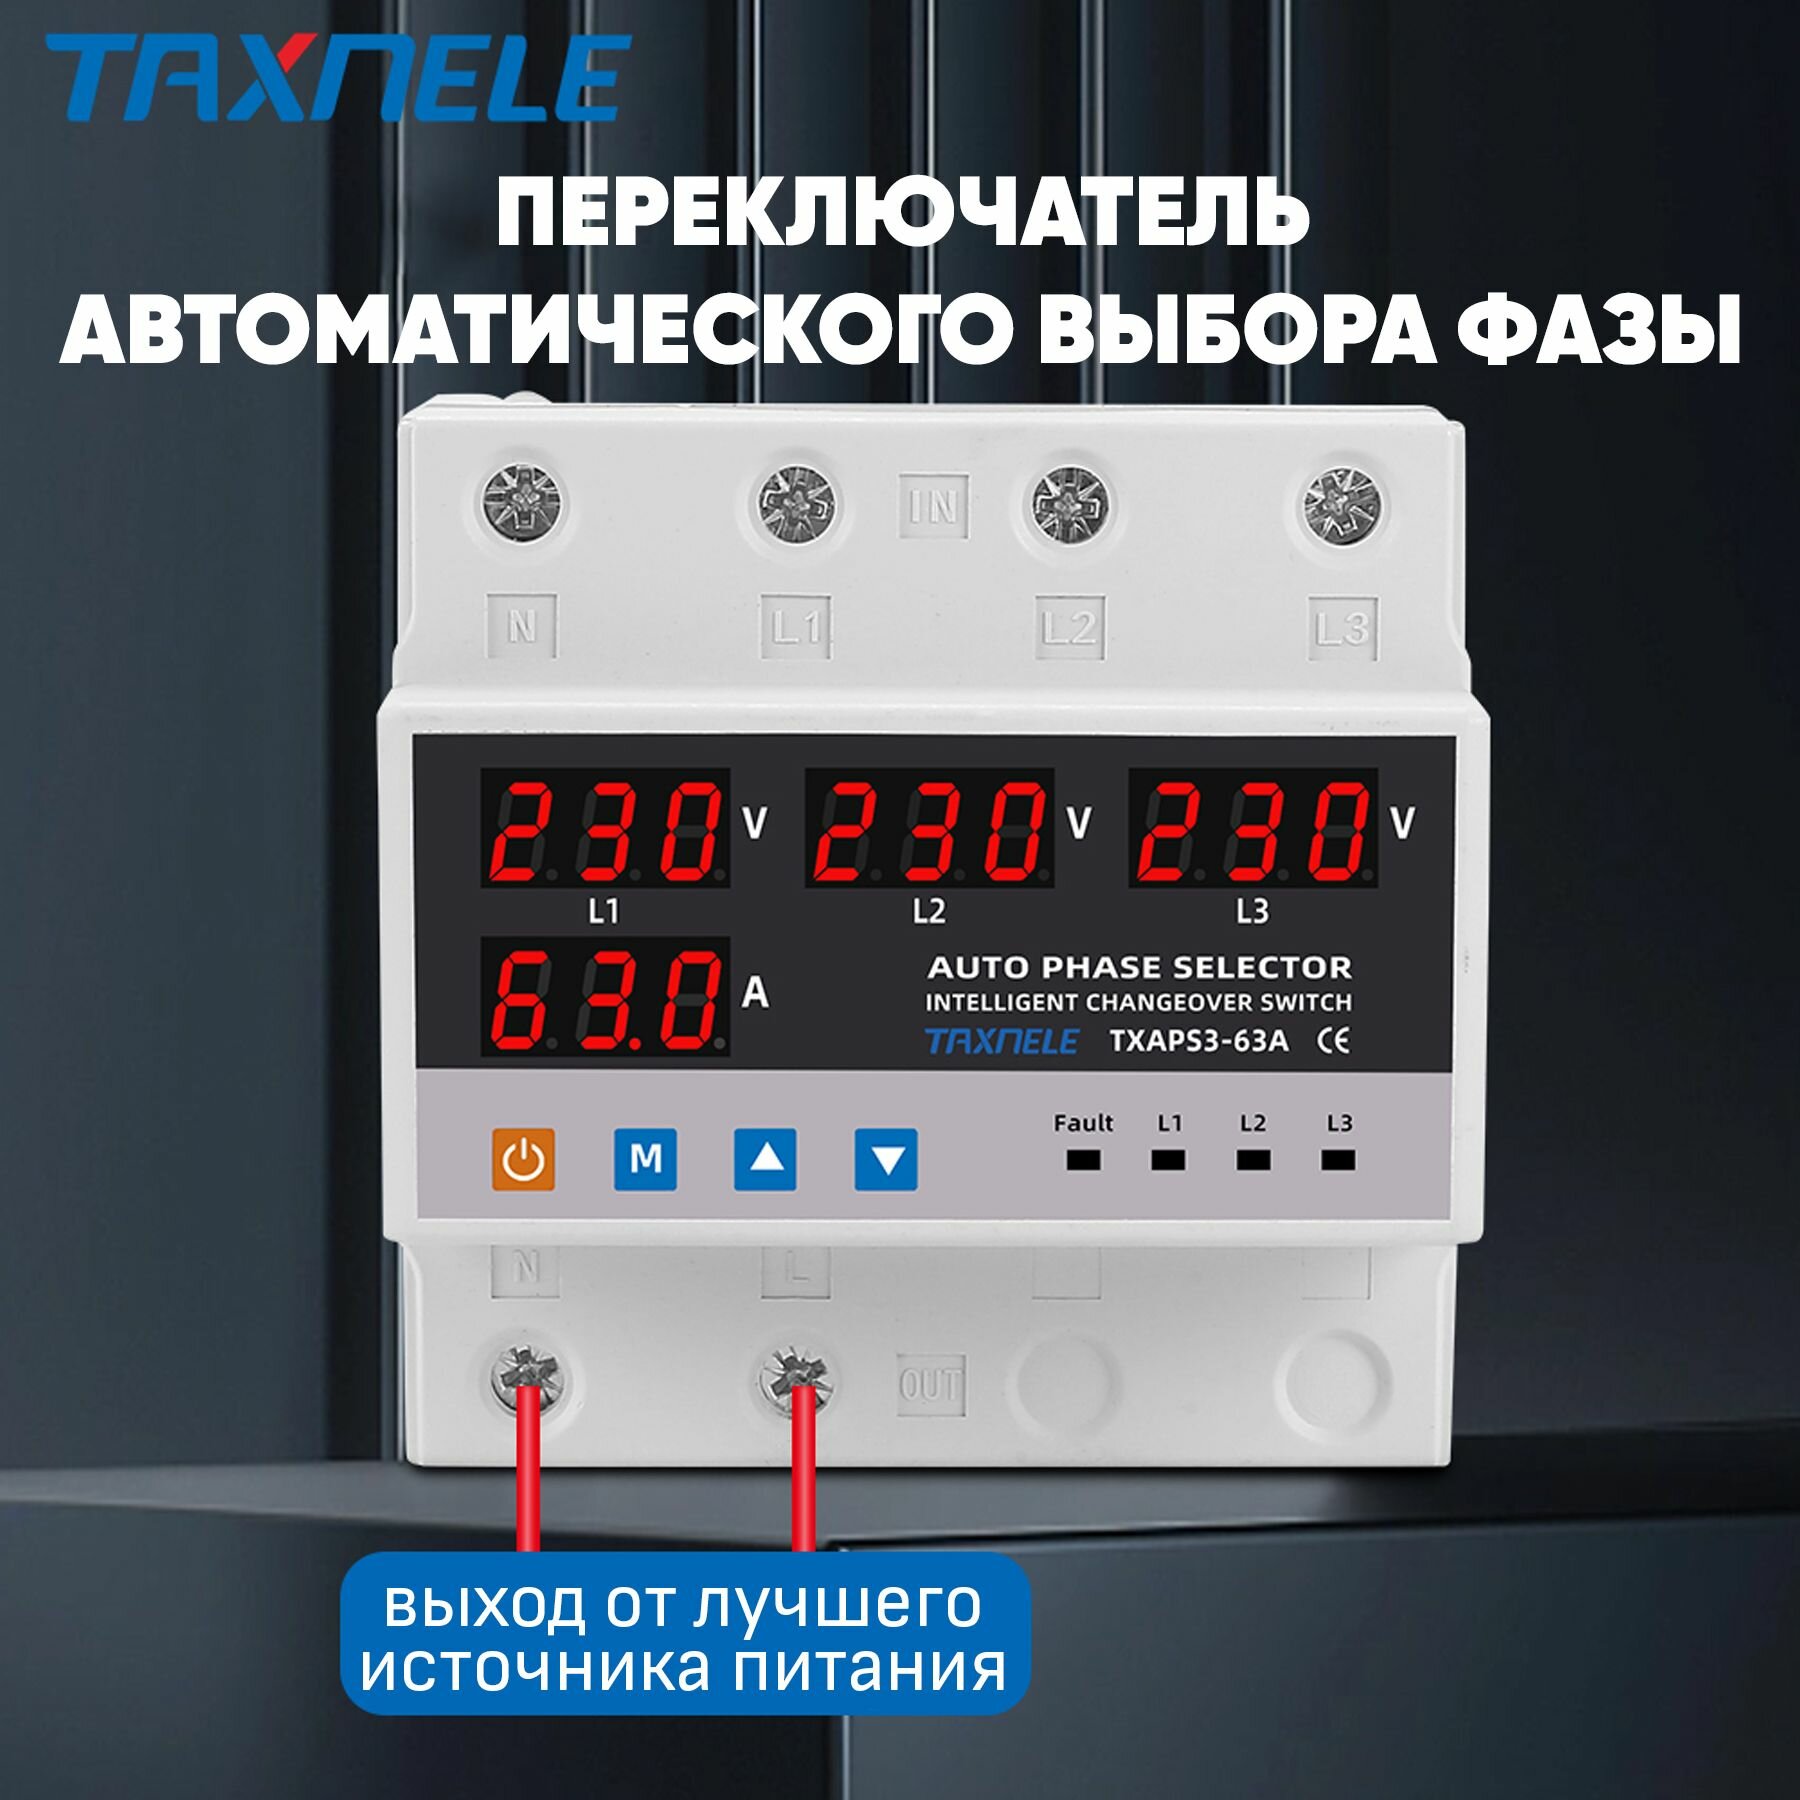 Автоматический переключатель фазы Taxnele TXAPS3-63A / Реле контроля фаз / Фазоискатель